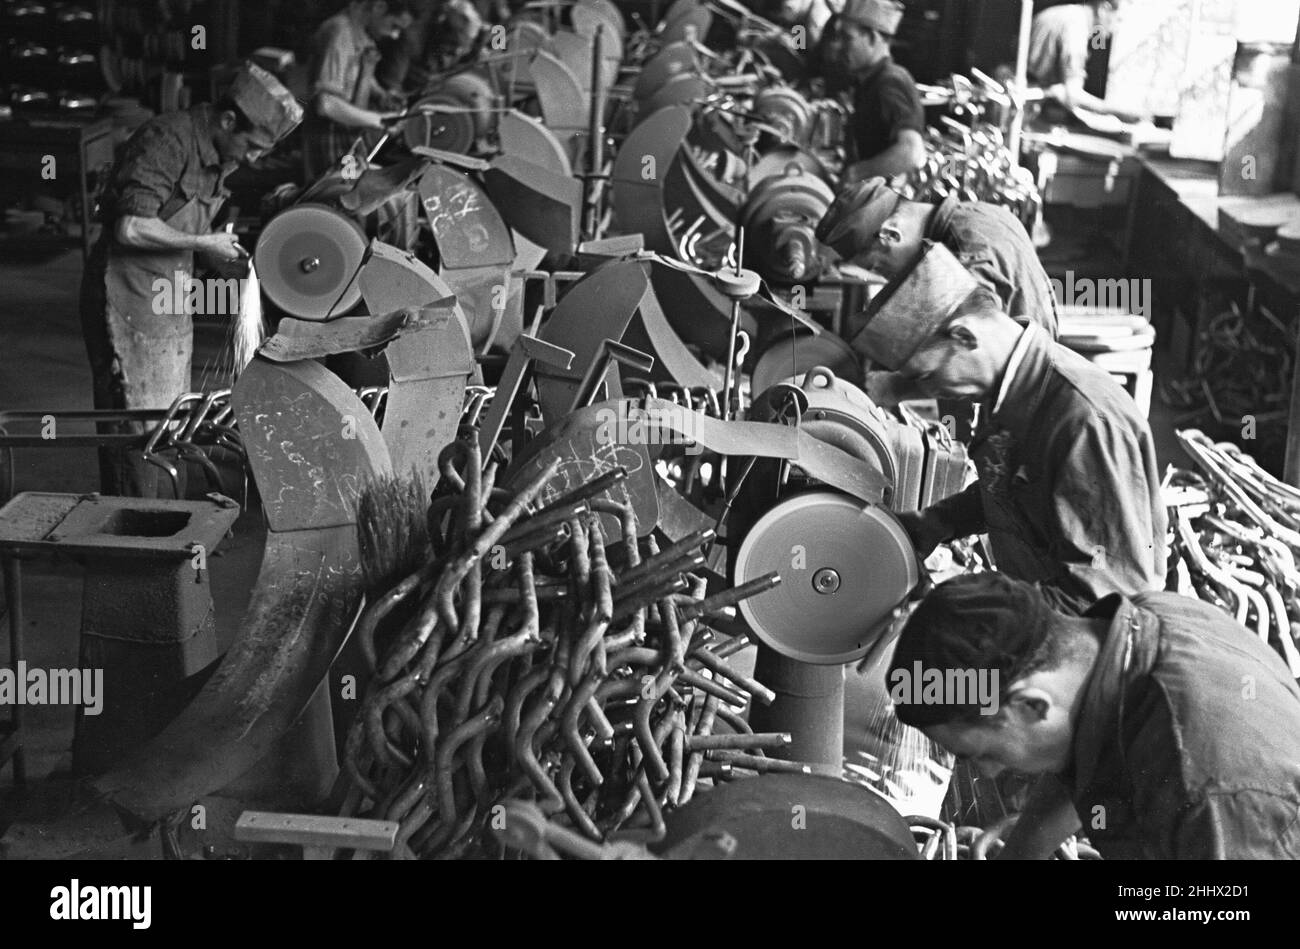 Les travailleurs de la chaîne de production de l'usine de moto Bianchi à Milan qui produisent des poignées .Vers 1955 Banque D'Images